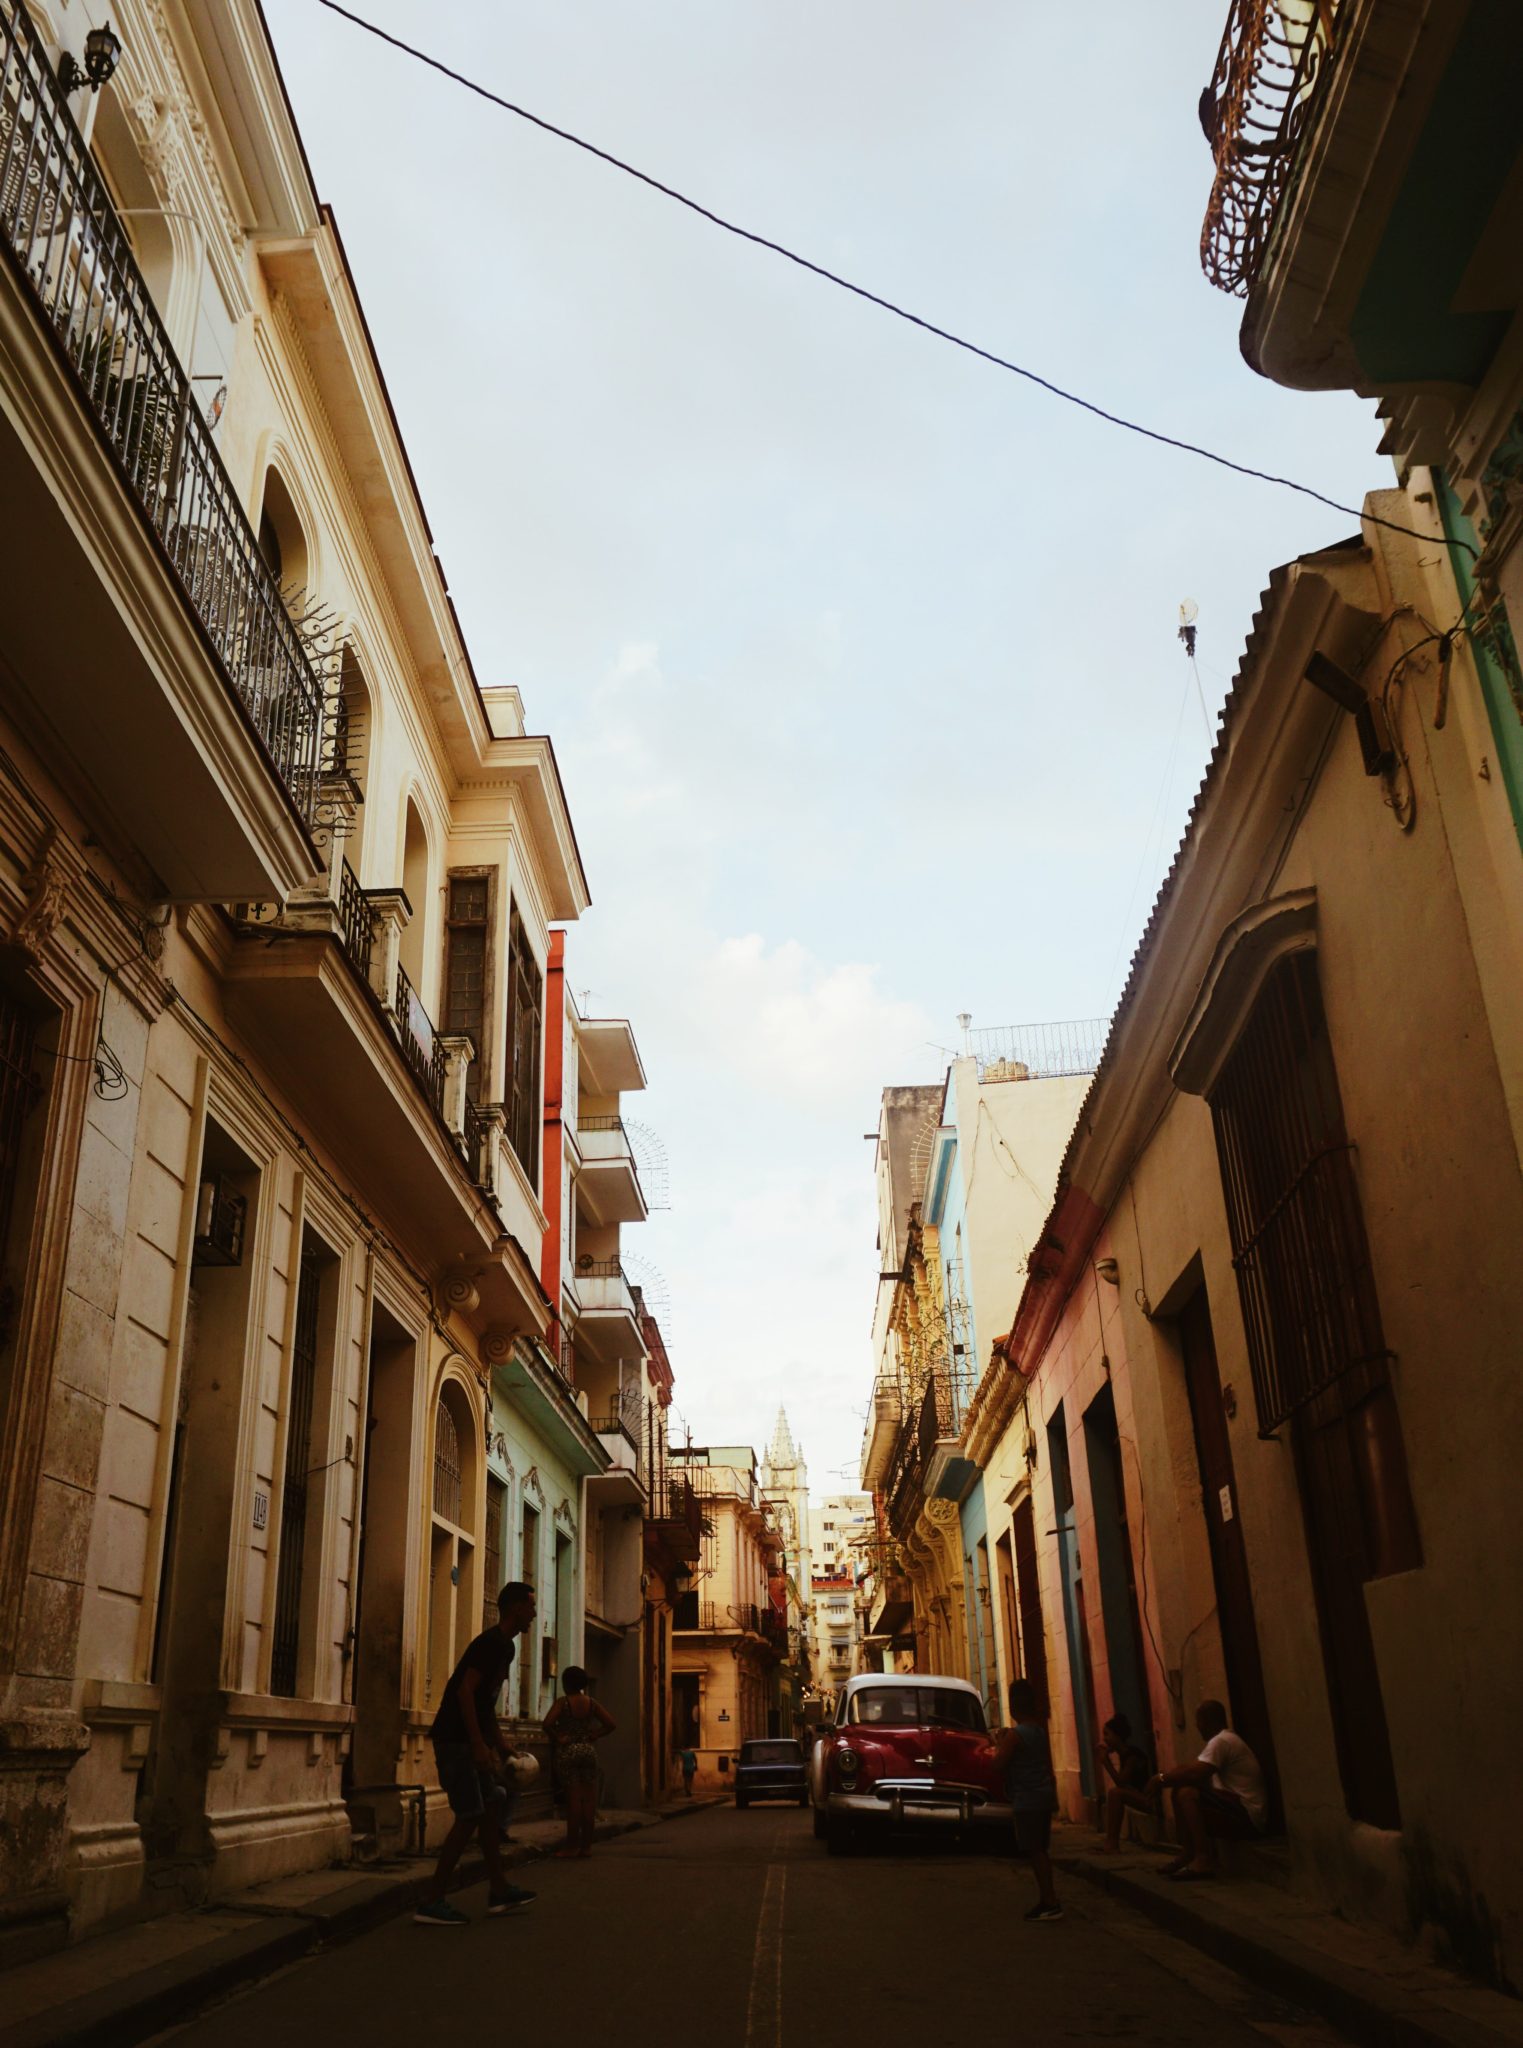 Preguntas a la hora de comprar una casa en Cuba